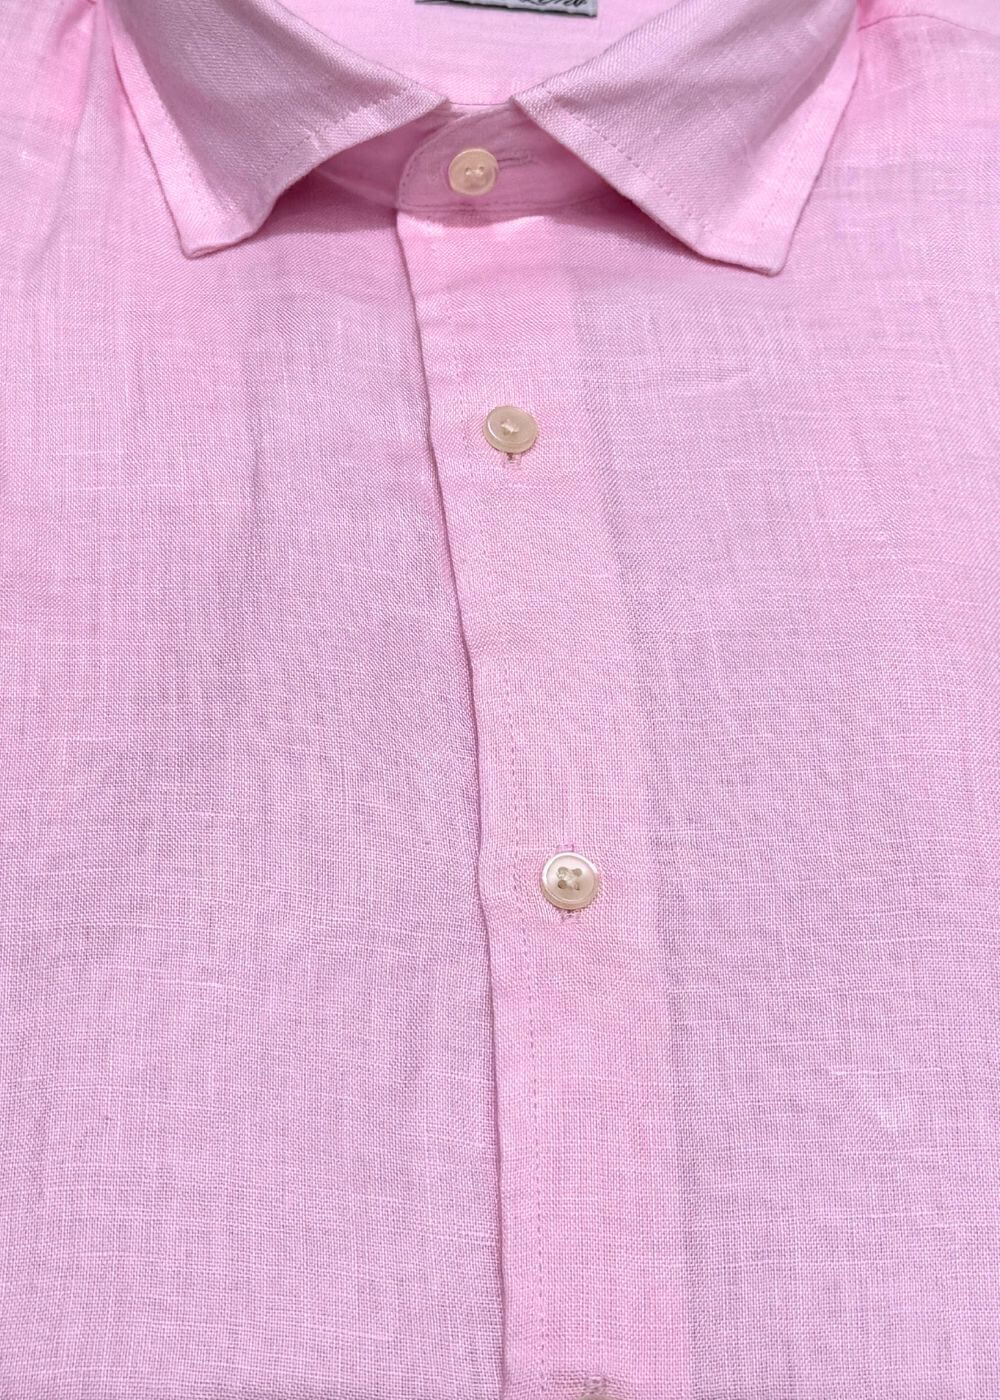 Camicia Collo classico lino - ROSA